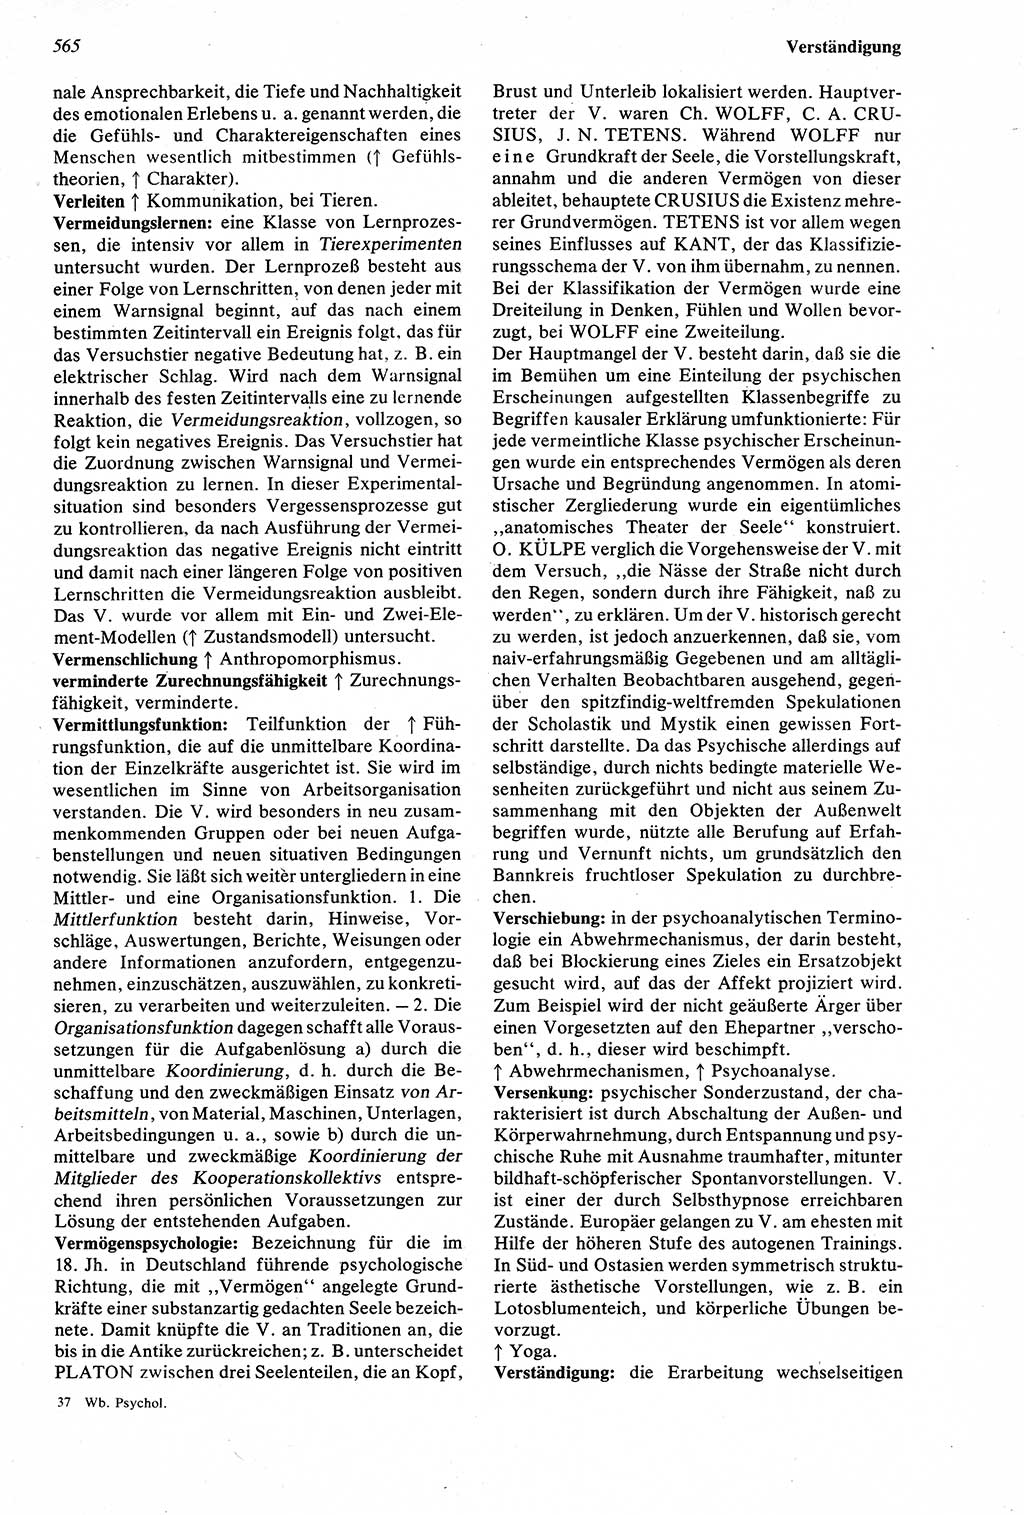 Wörterbuch der Psychologie [Deutsche Demokratische Republik (DDR)] 1976, Seite 565 (Wb. Psych. DDR 1976, S. 565)